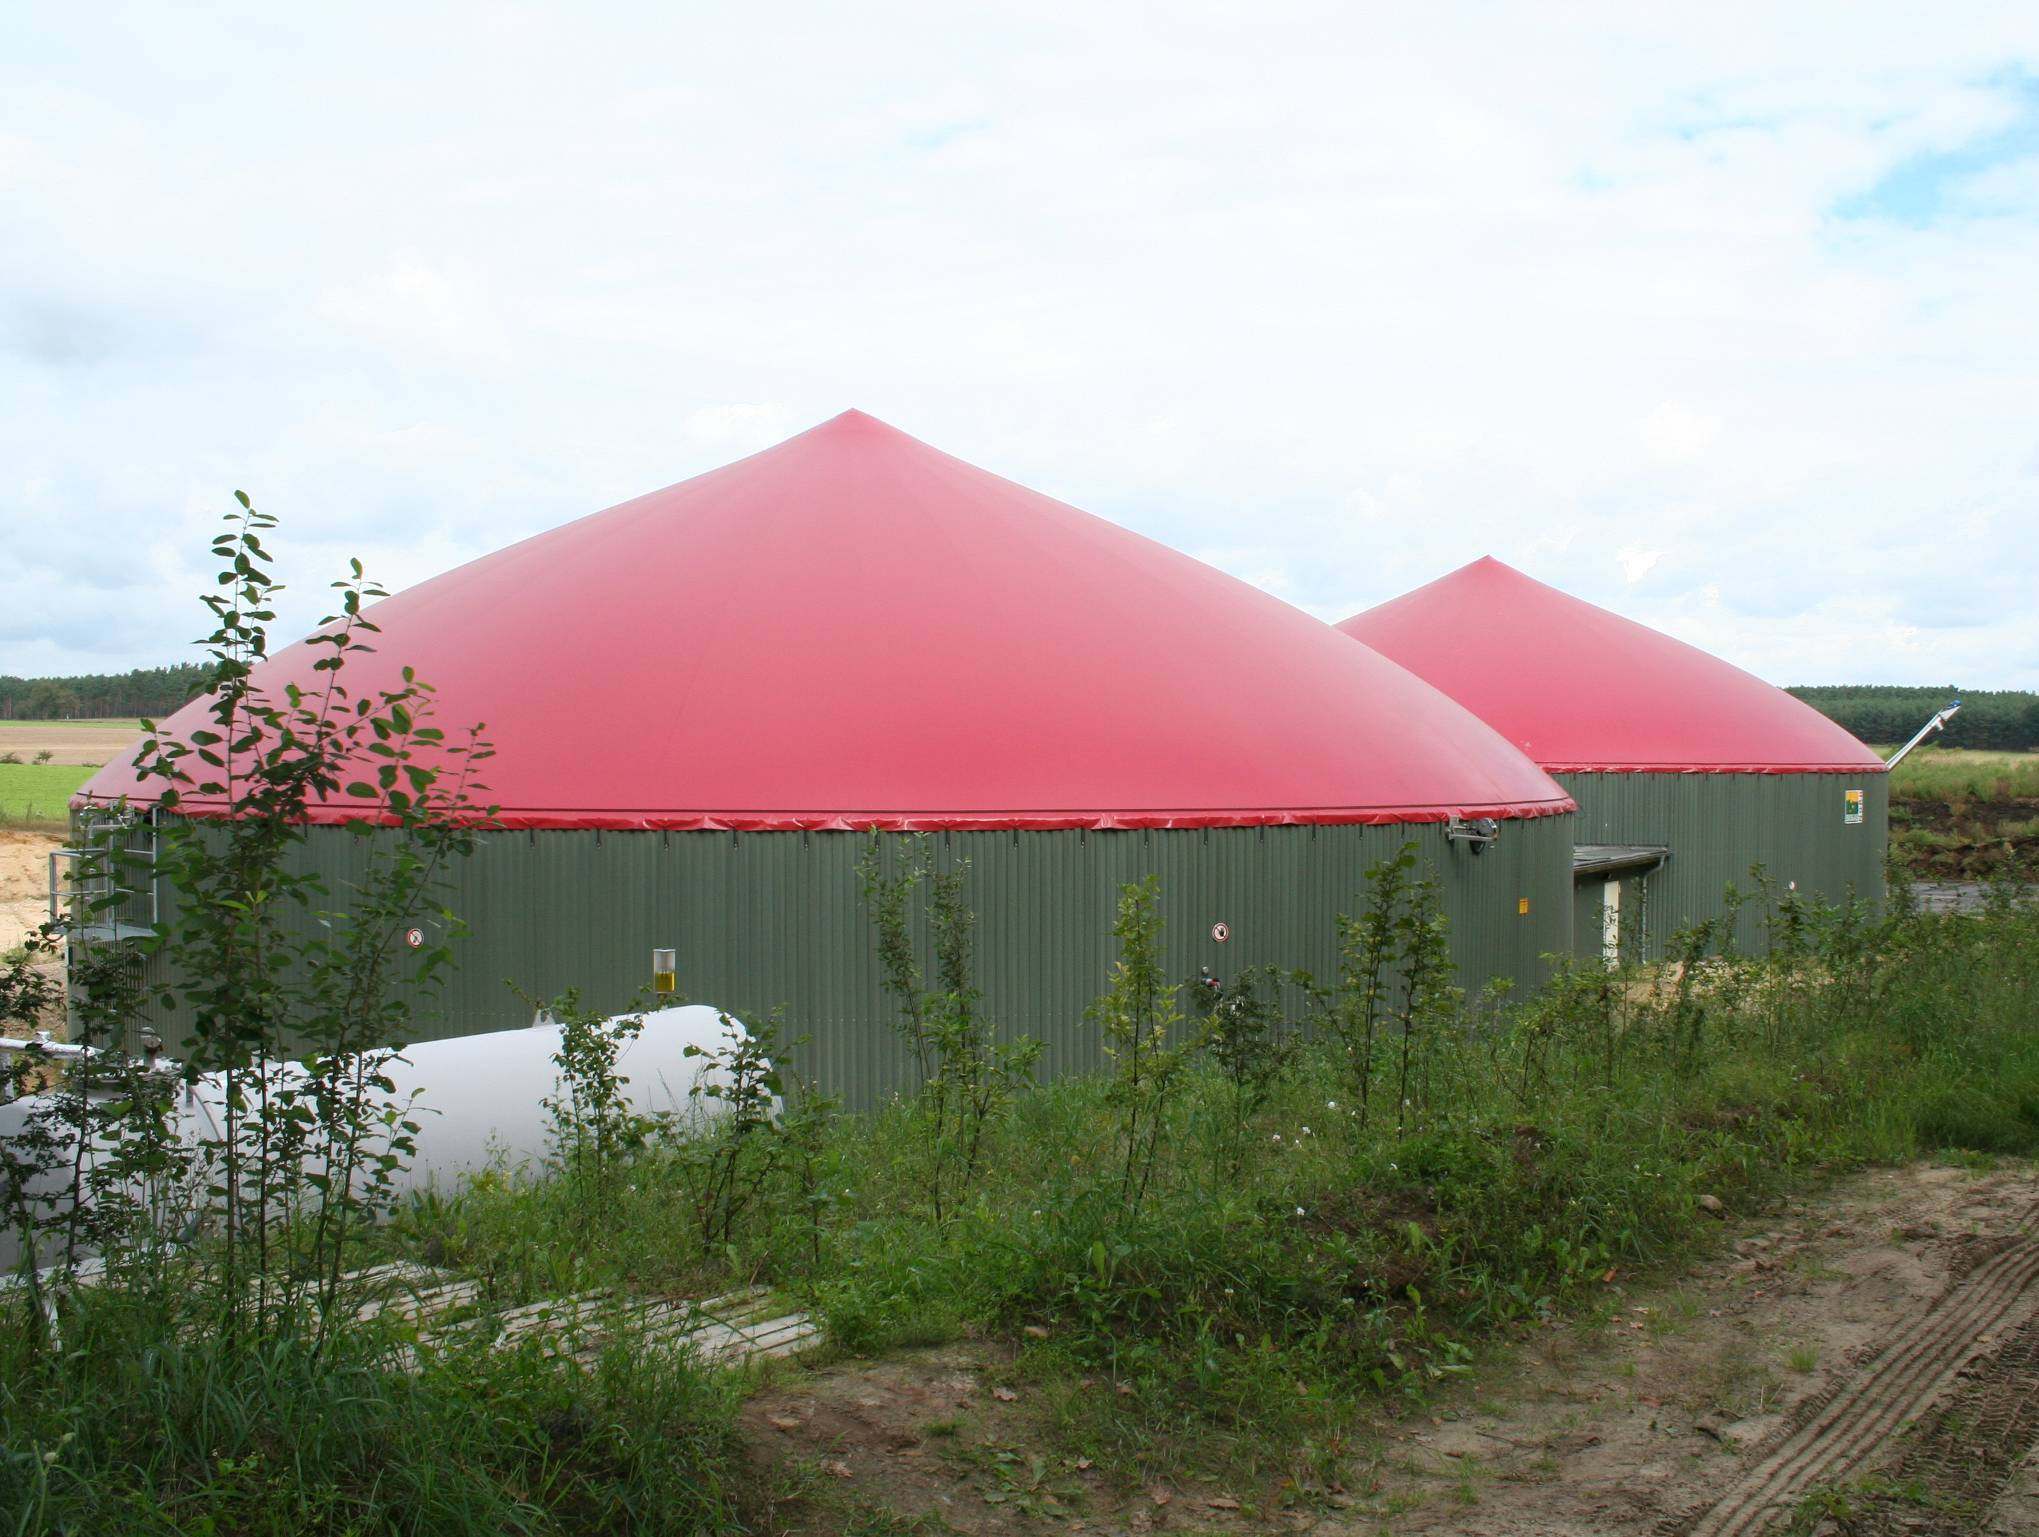 Biogas giver Økologi mobile næringsstoffer Landscentret Økologisk Landsforening 5.